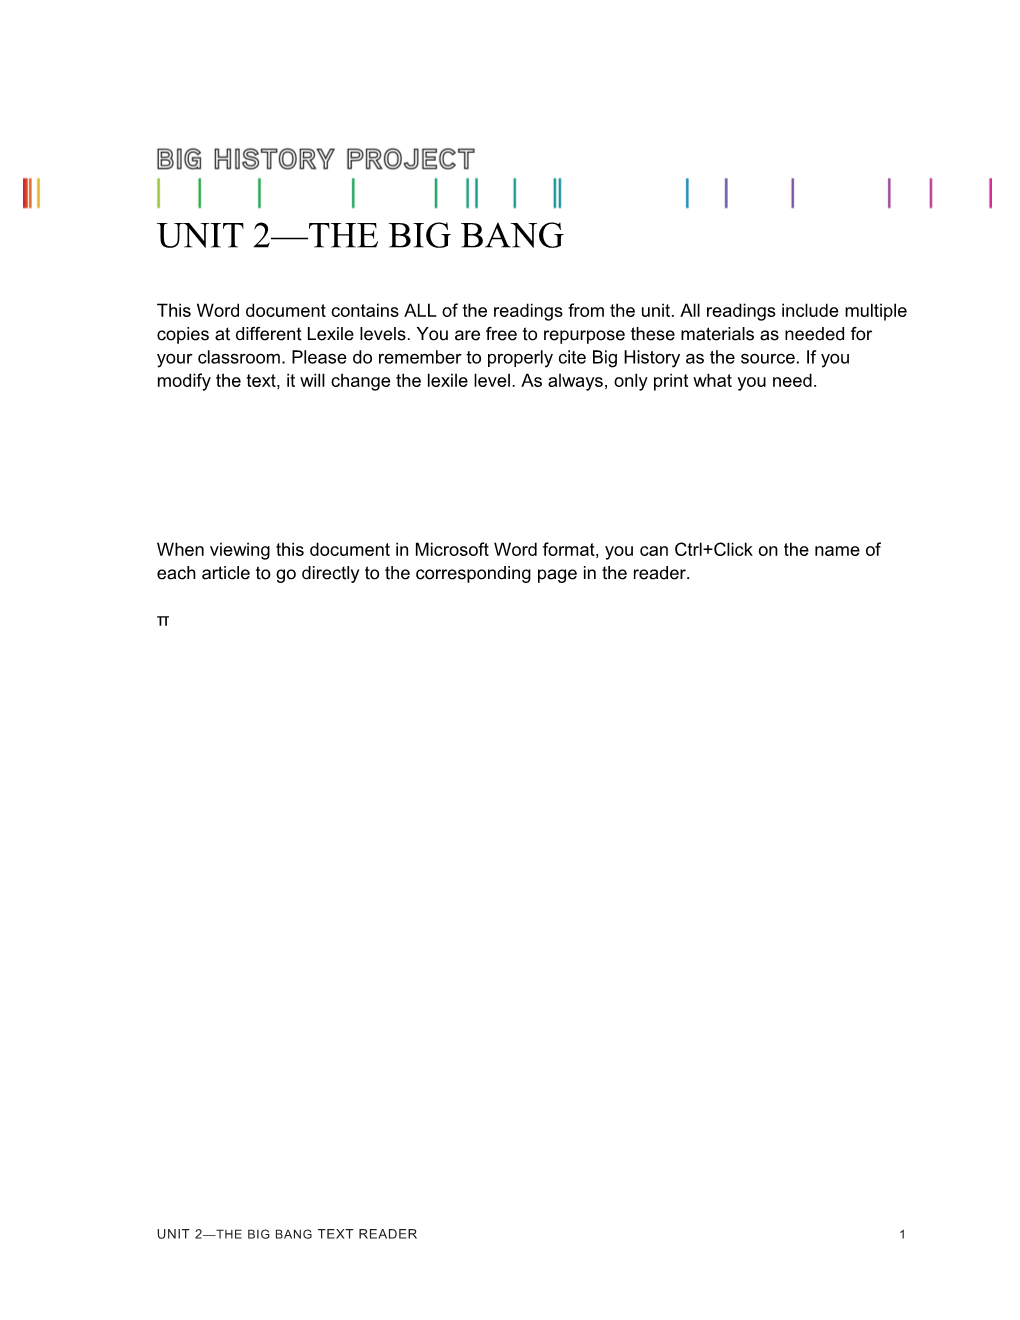 Unit 2 the BIG BANG